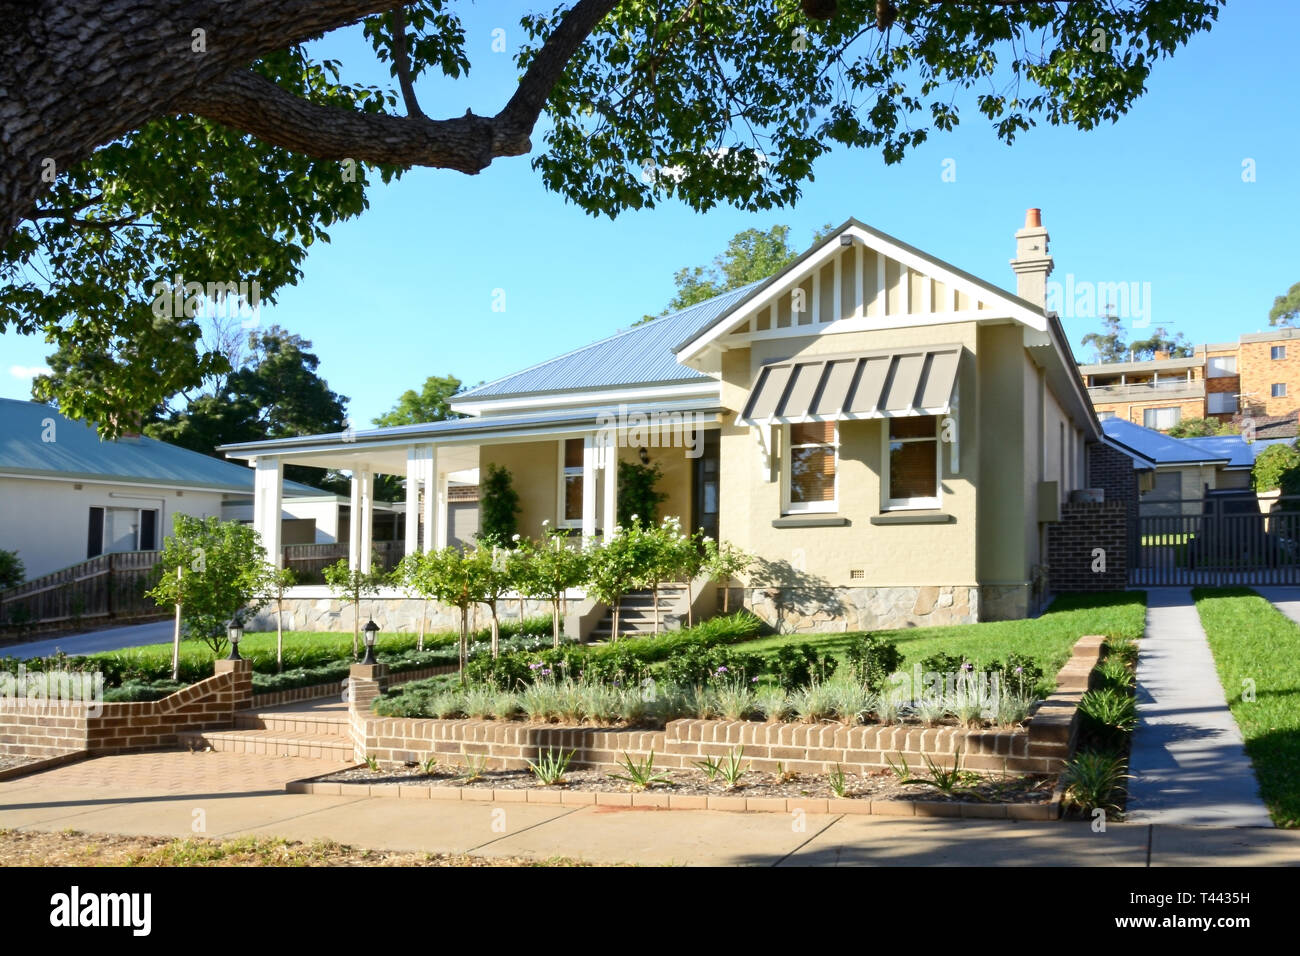 La fin de banlieue australienne Russie Style Home. Tamworth NSW Australie. Banque D'Images